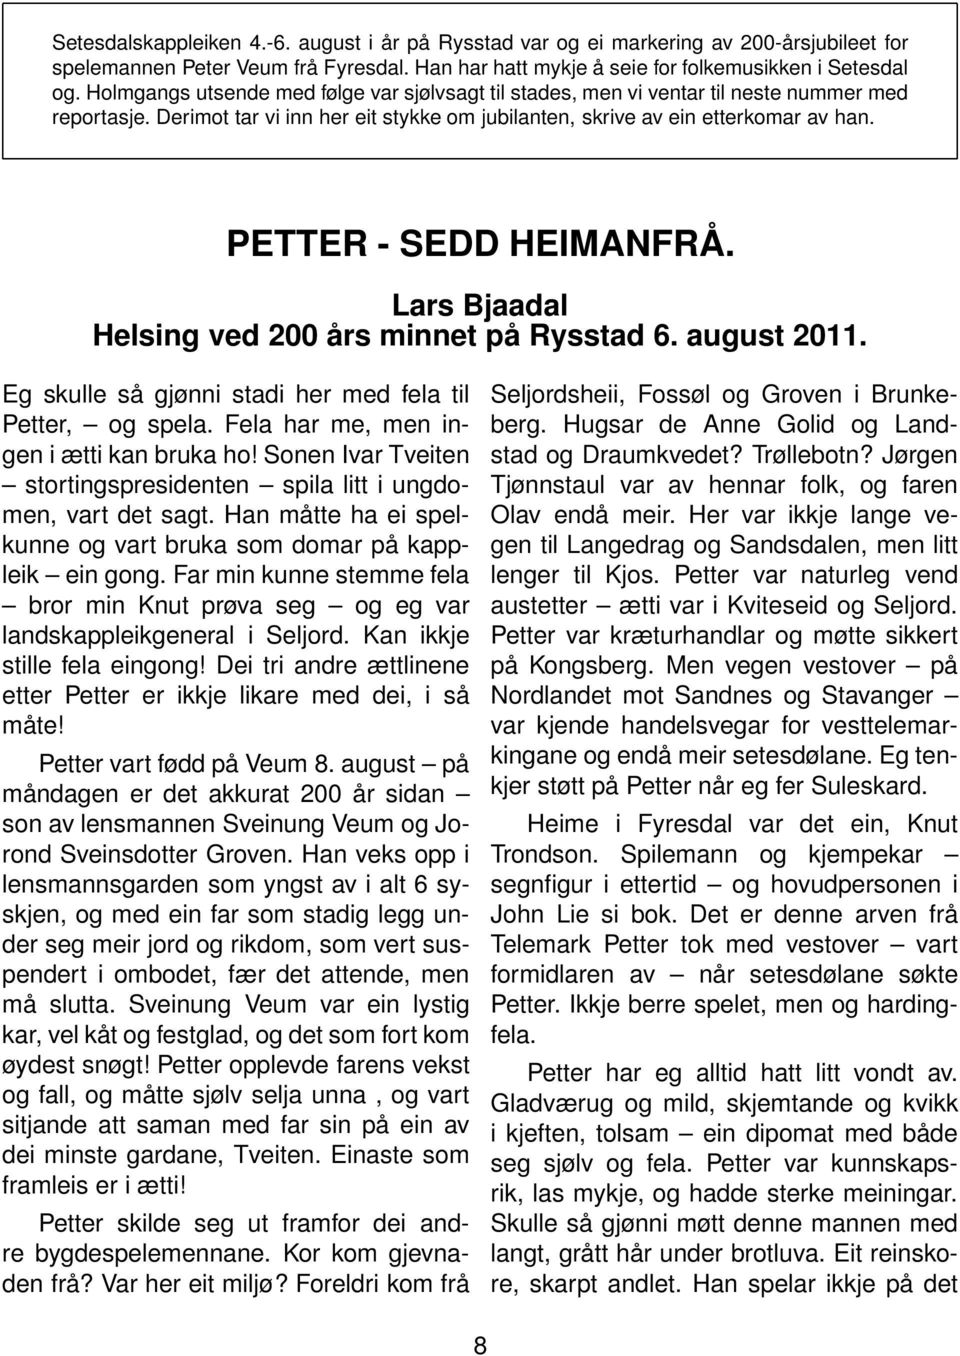 PETTER - SEDD HEIMANFRÅ. Lars Bjaadal Helsing ved 200 års minnet på Rysstad 6. august 2011. Eg skulle så gjønni stadi her med fela til Petter, og spela. Fela har me, men ingen i ætti kan bruka ho!